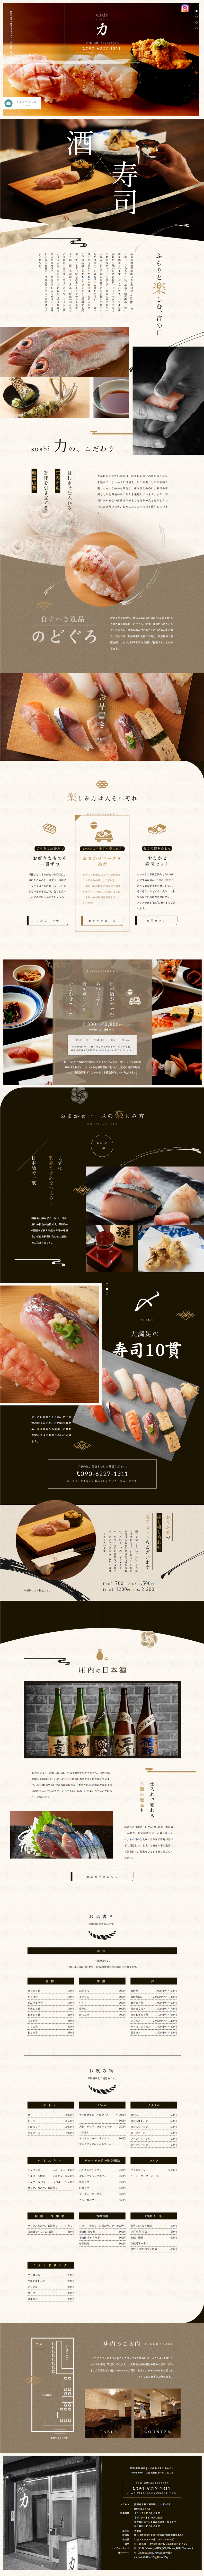 sushi 力_pc_1